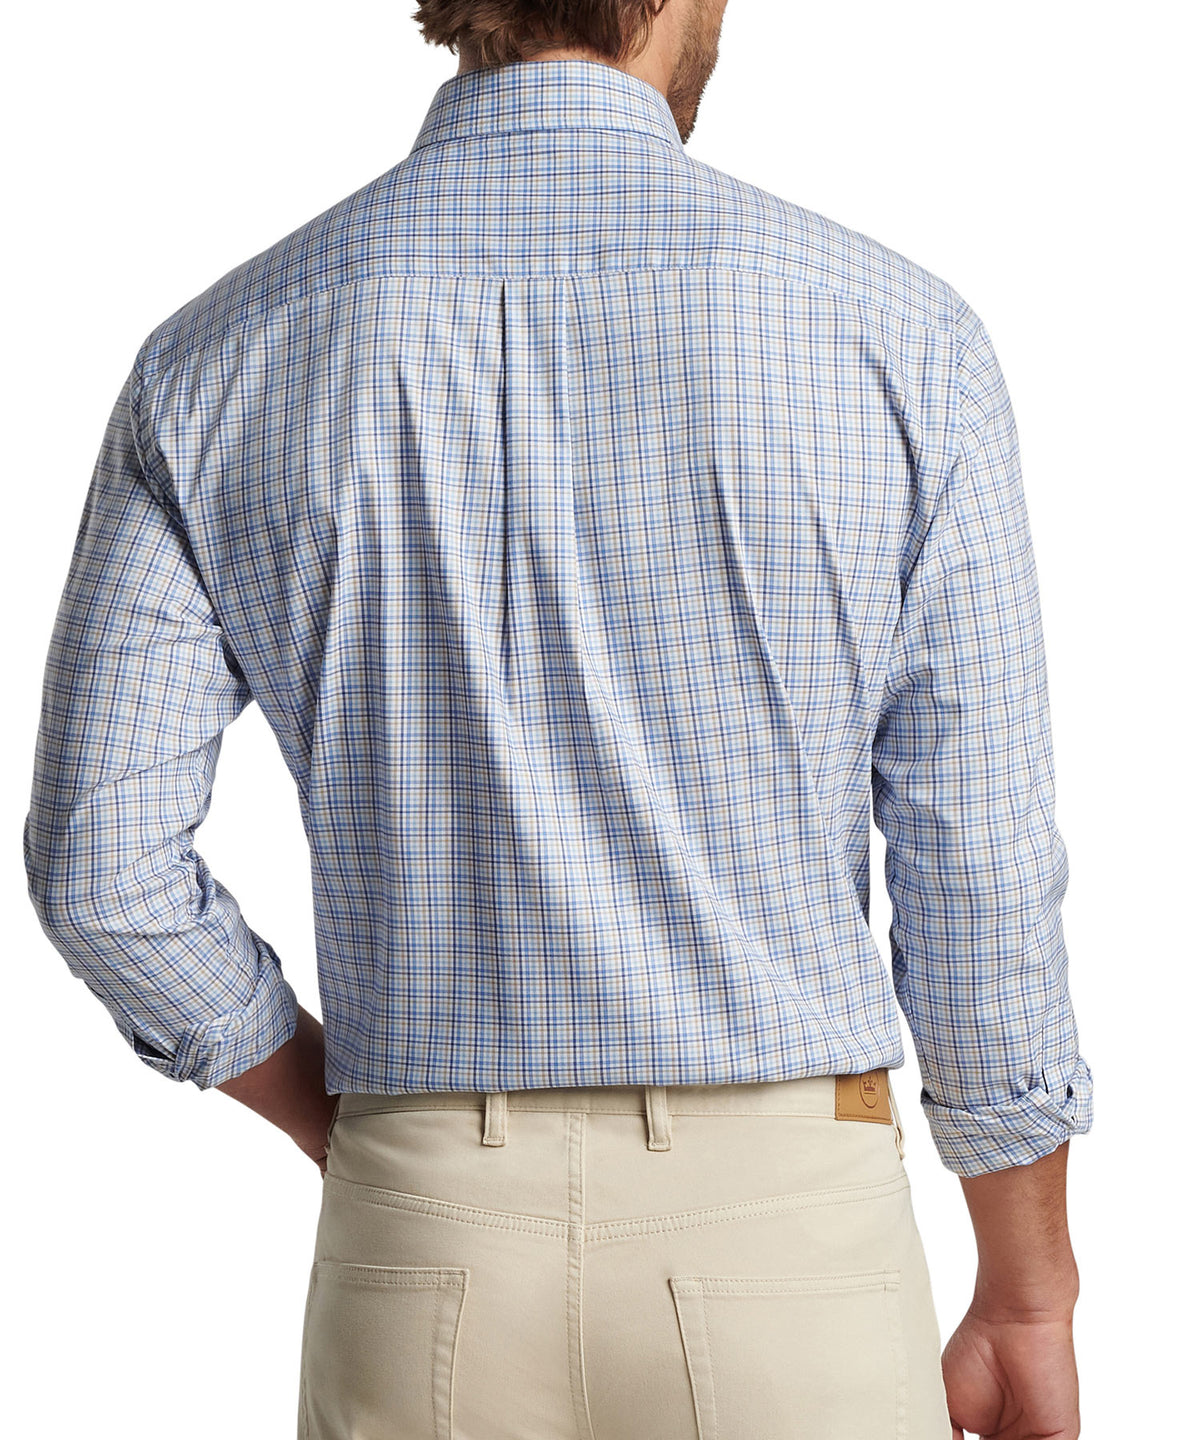 Peter Millar Long Sleeve Cutler Button-Down Collar Patterned Sport Shirt, Men's Big & Tall